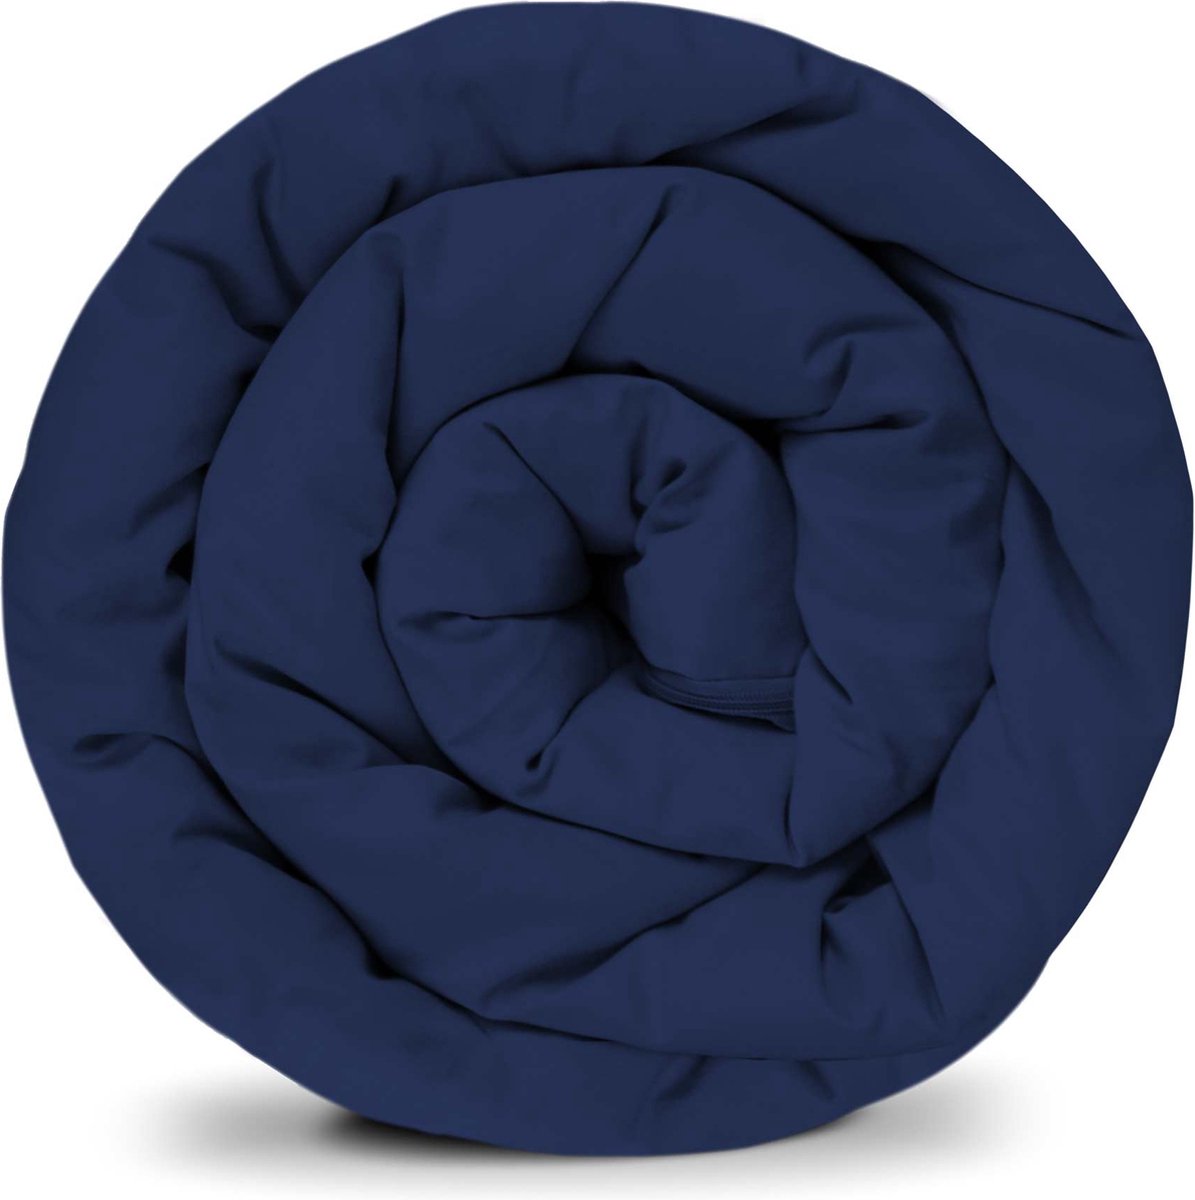 BALANCE verzwaarde dekenhoes in donkerblauw katoen ritssysteem zomerhoes voor volwassenen/tieners voor een betere slaap afmeting: 135x200 cm